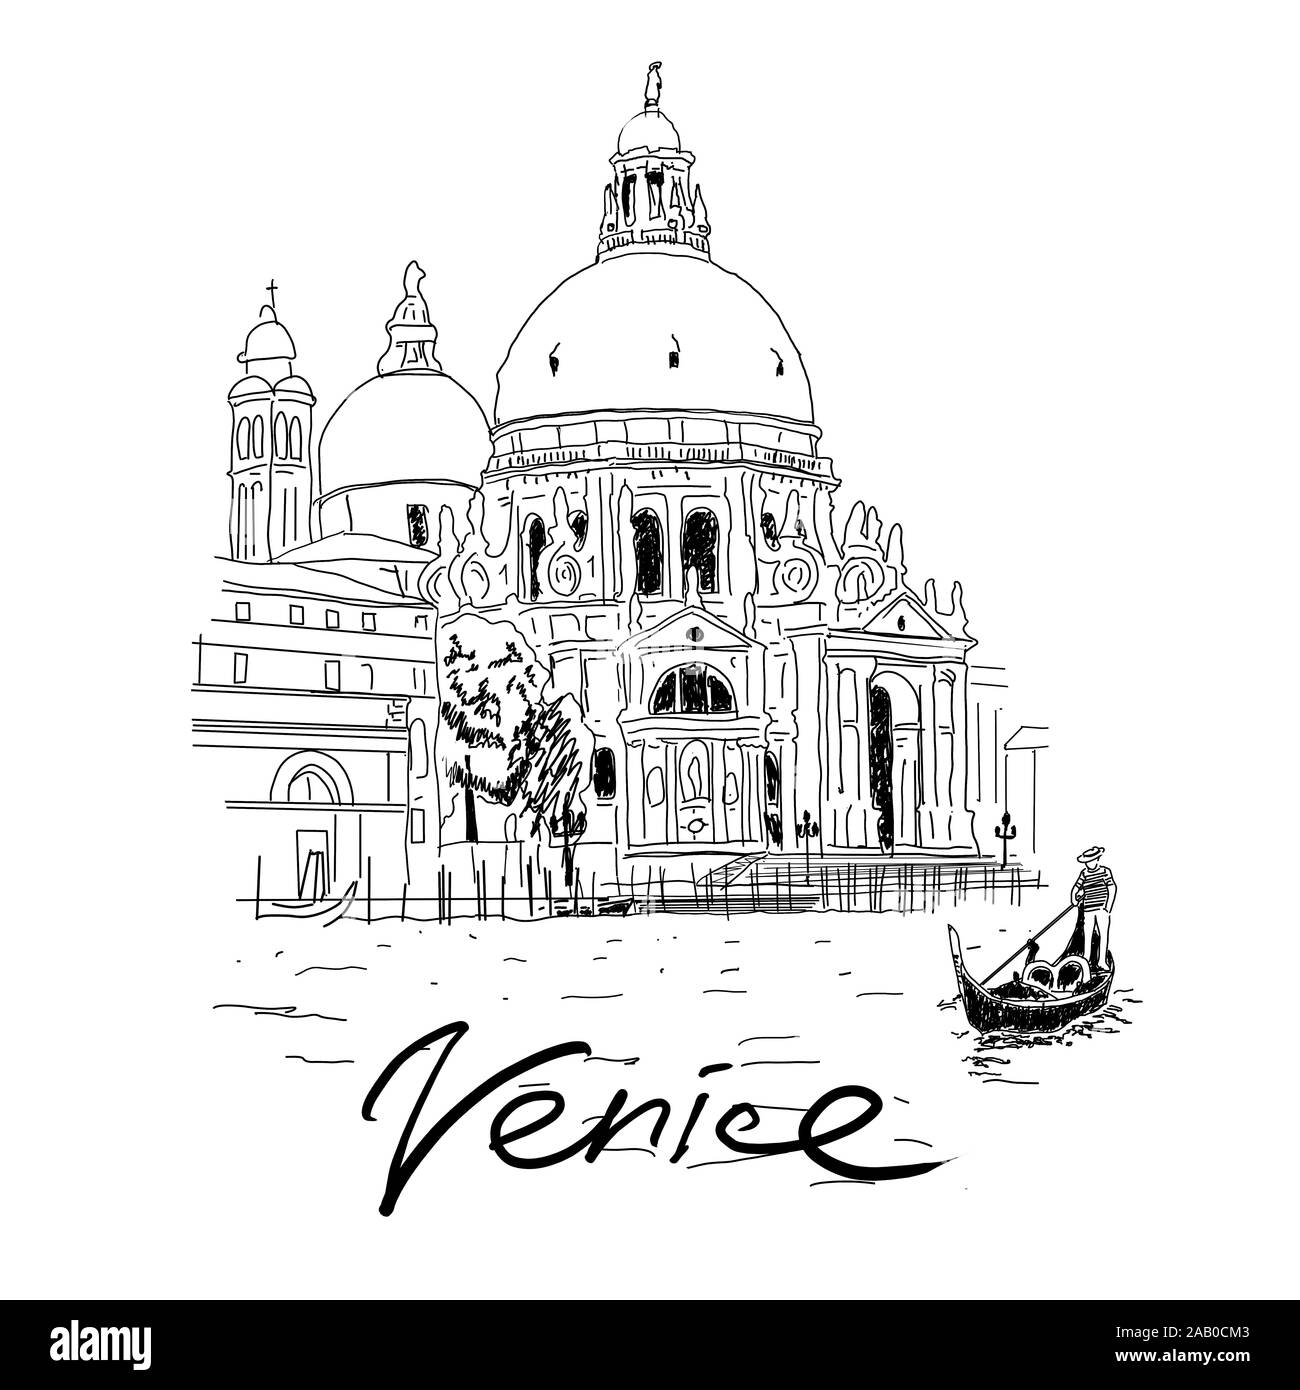 Santa Maria della Salute church on Grand Canal in Venice, Italy. Hand drawn sketch illustration Stock Photo